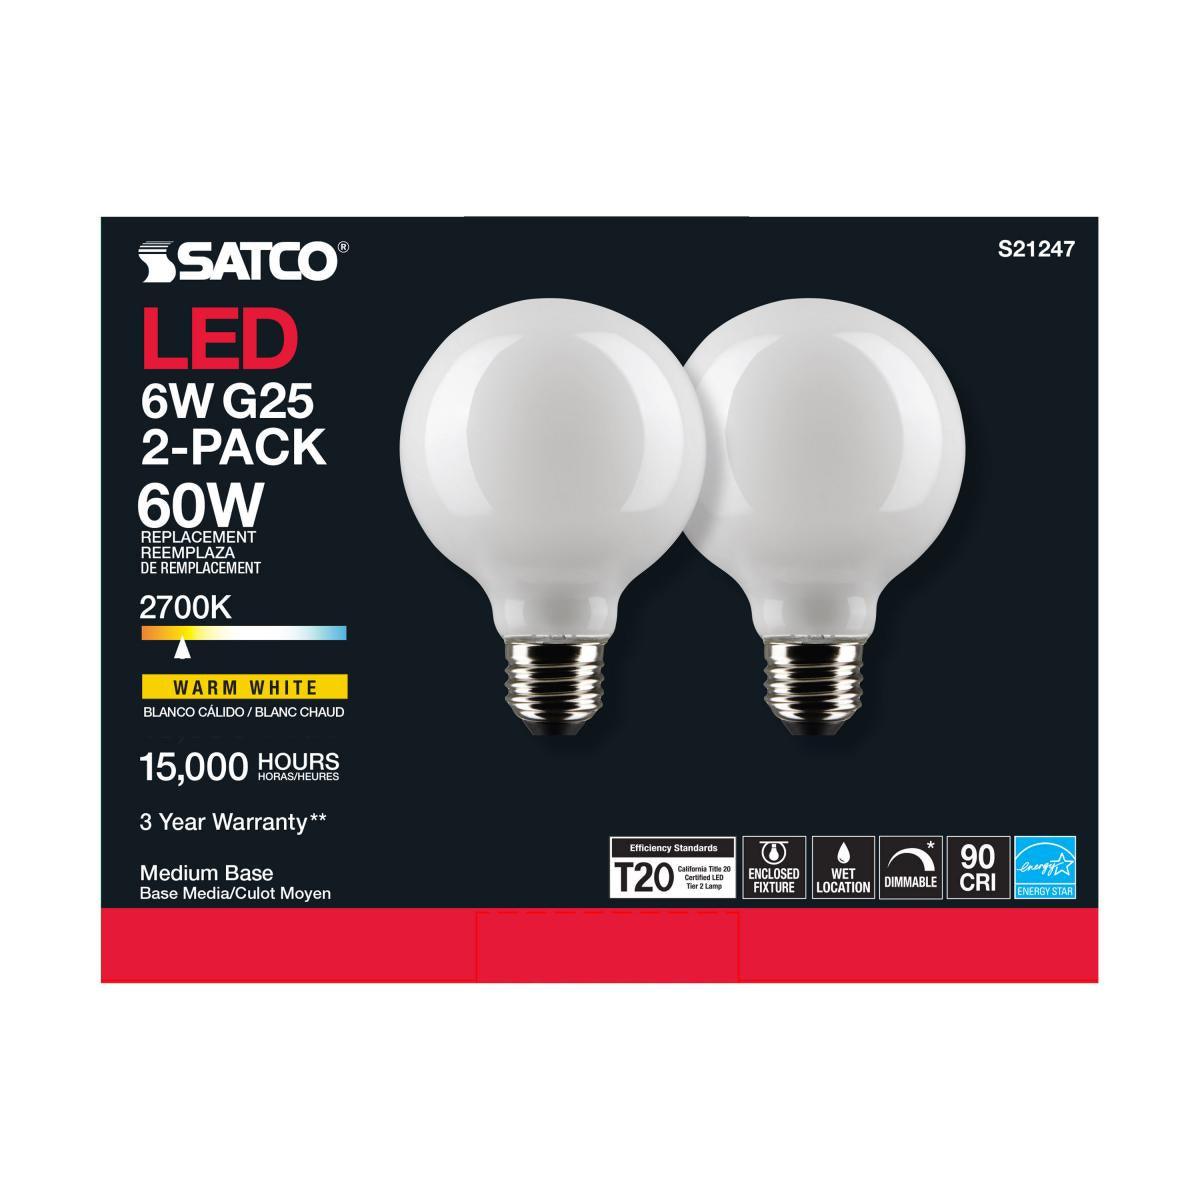 G25 LED Globe Bulb, 6 Watt, 500 Lumens, 2700K, E26 Medium Base, Frosted Finish, Pack Of 2